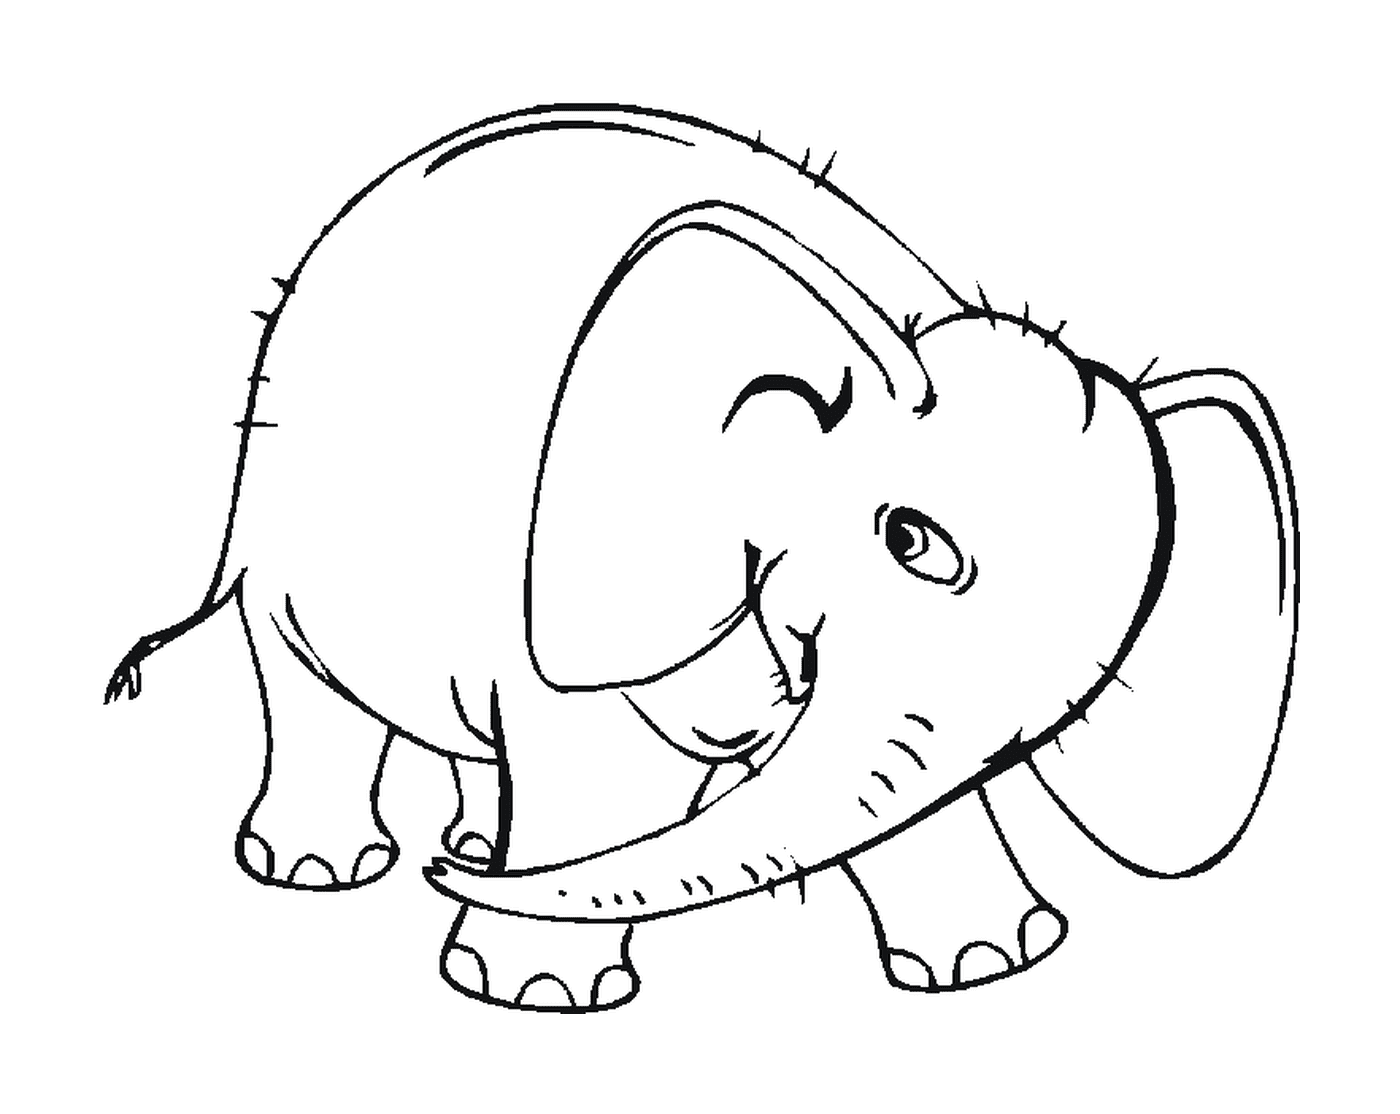  Un elefante con colmillos 